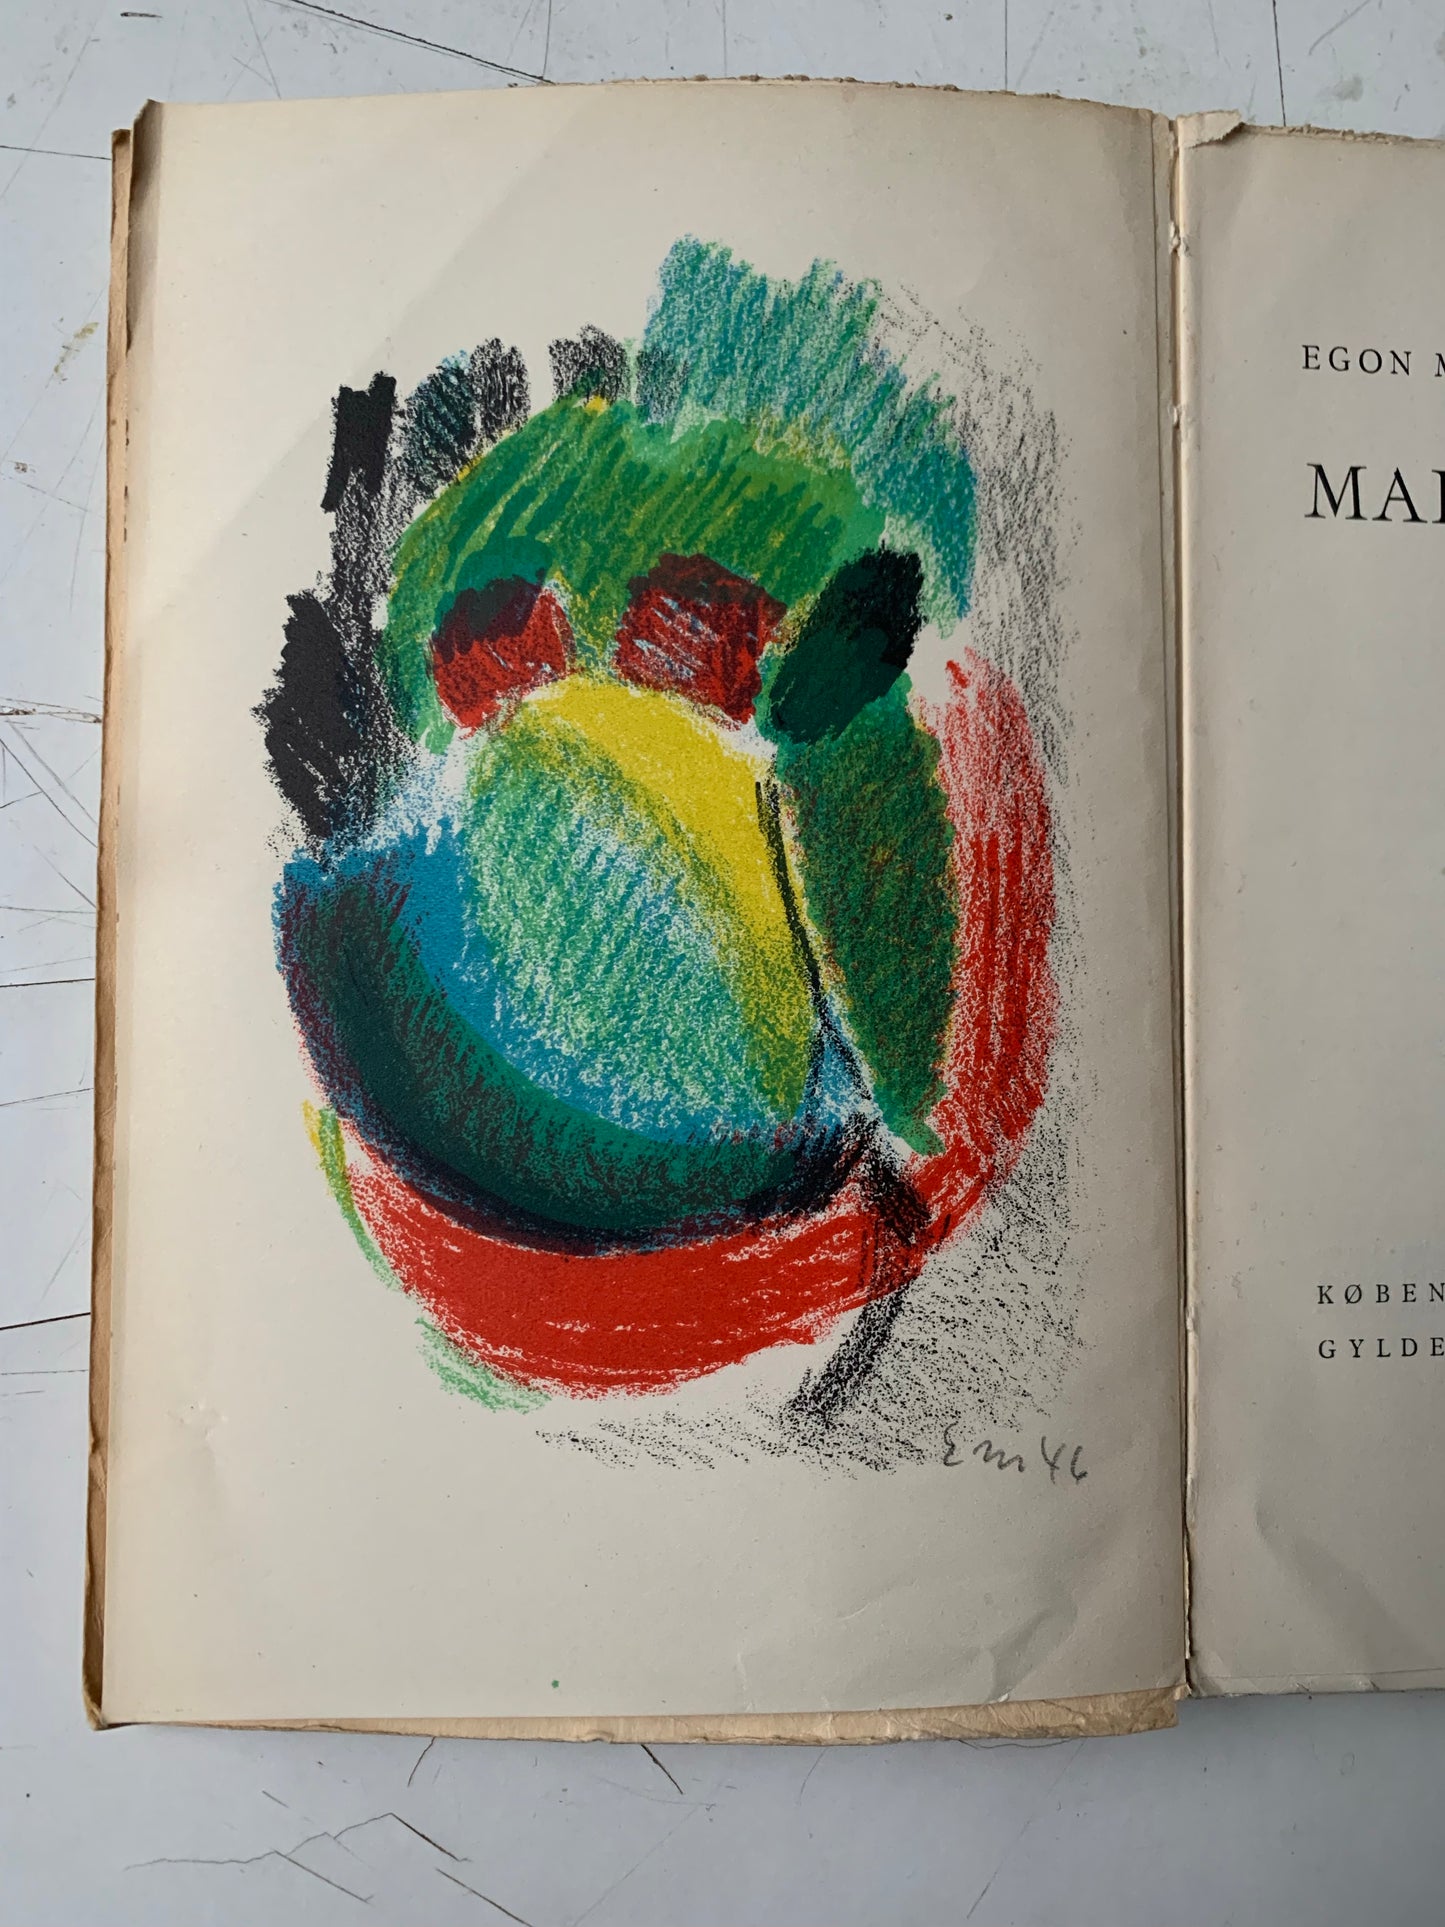 Egon Mathiesen. “Maleriets Vej”, 1946